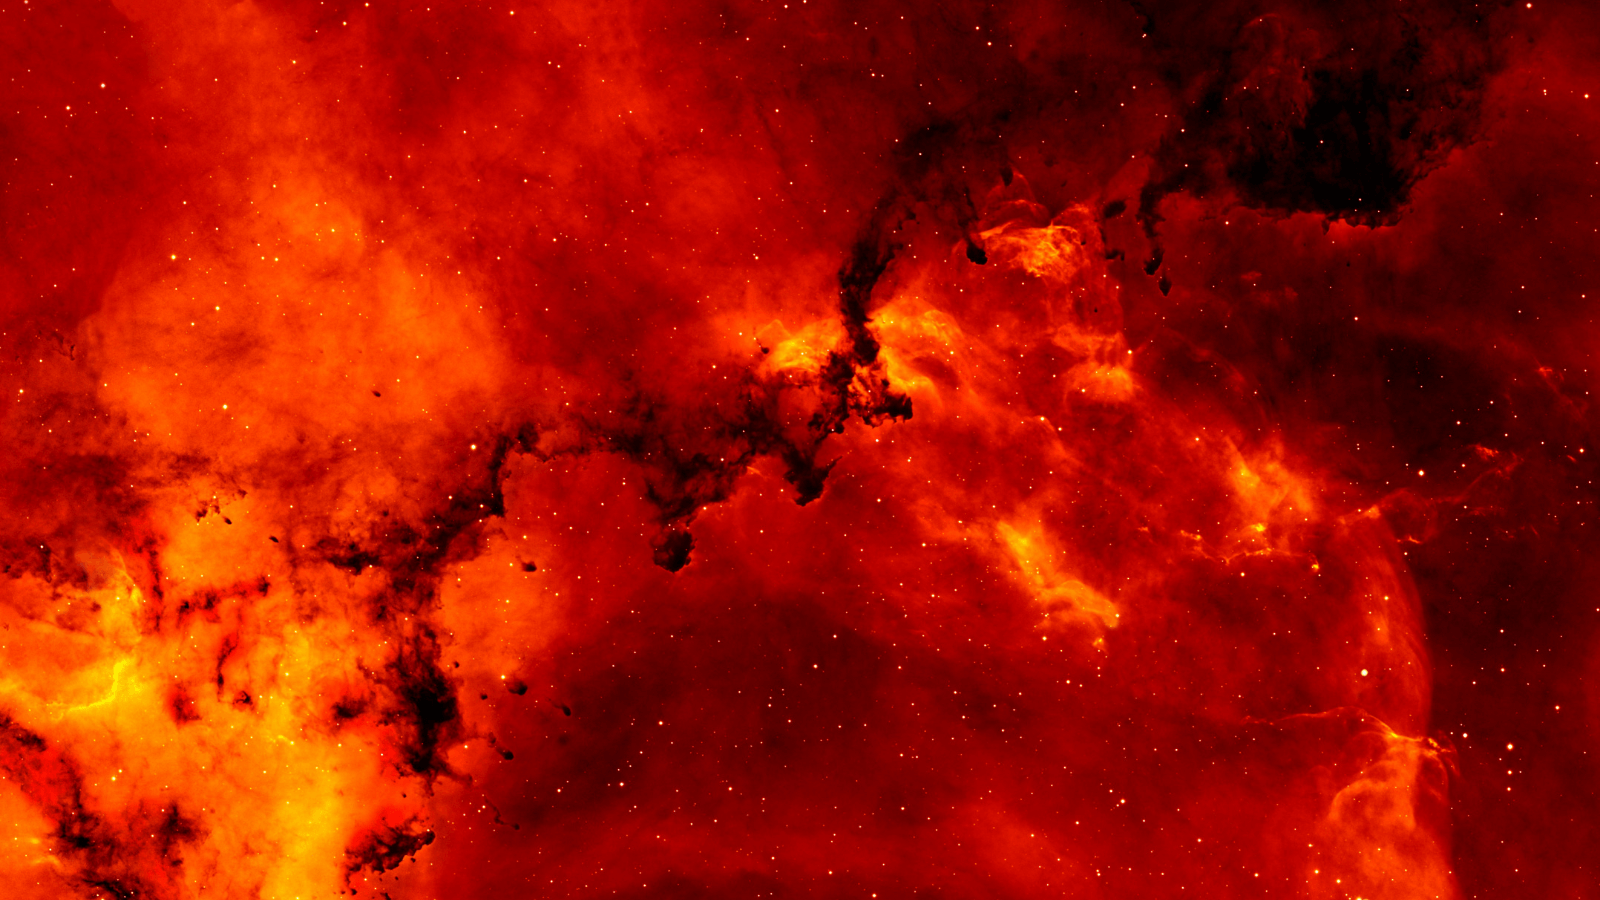 A red nebula